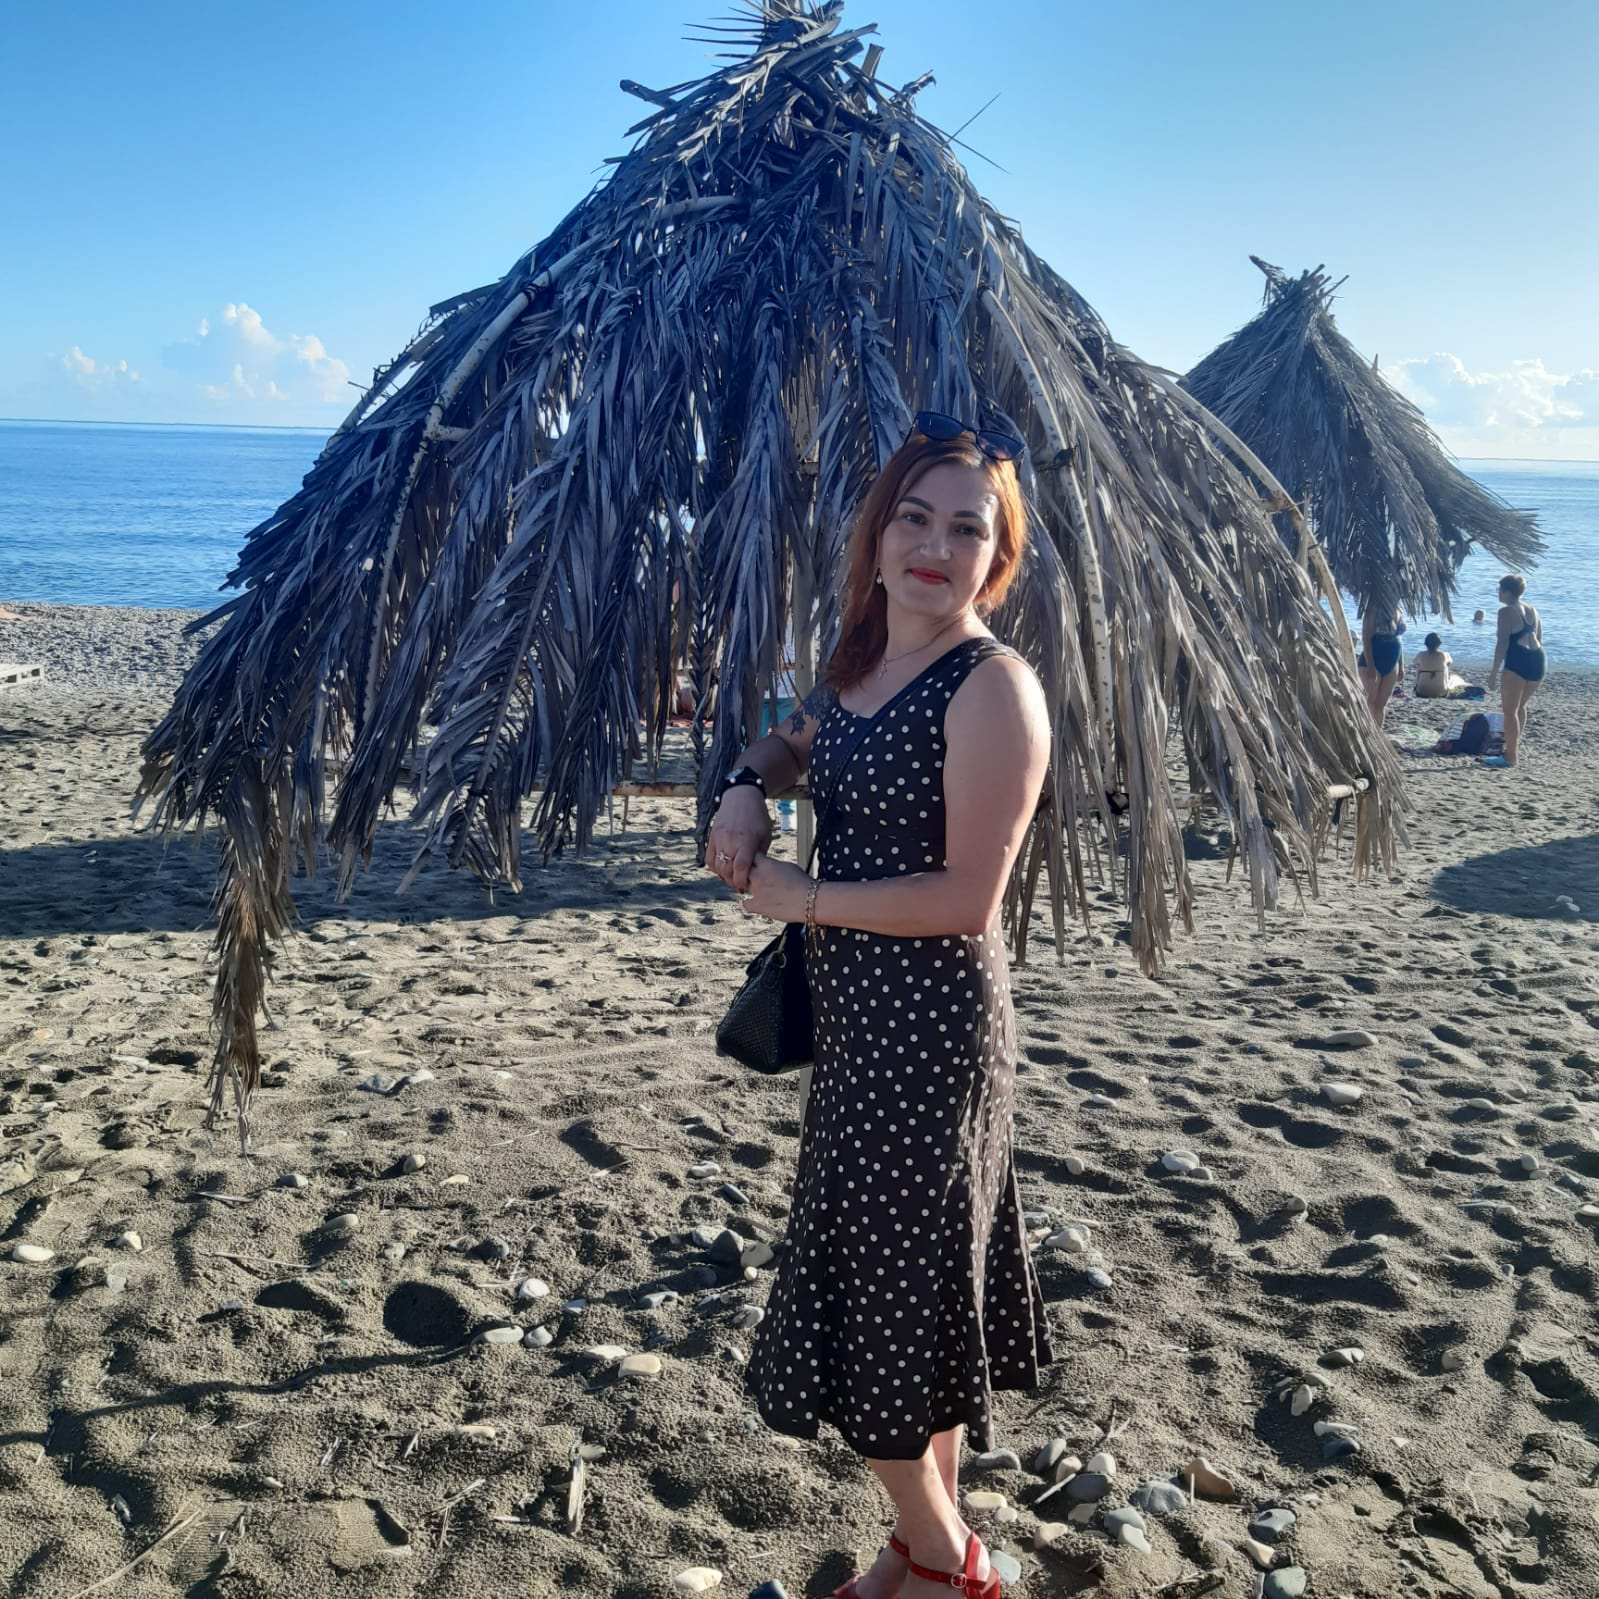 2019 год, Александра только приехала в отпуск в солнечную Абхазию